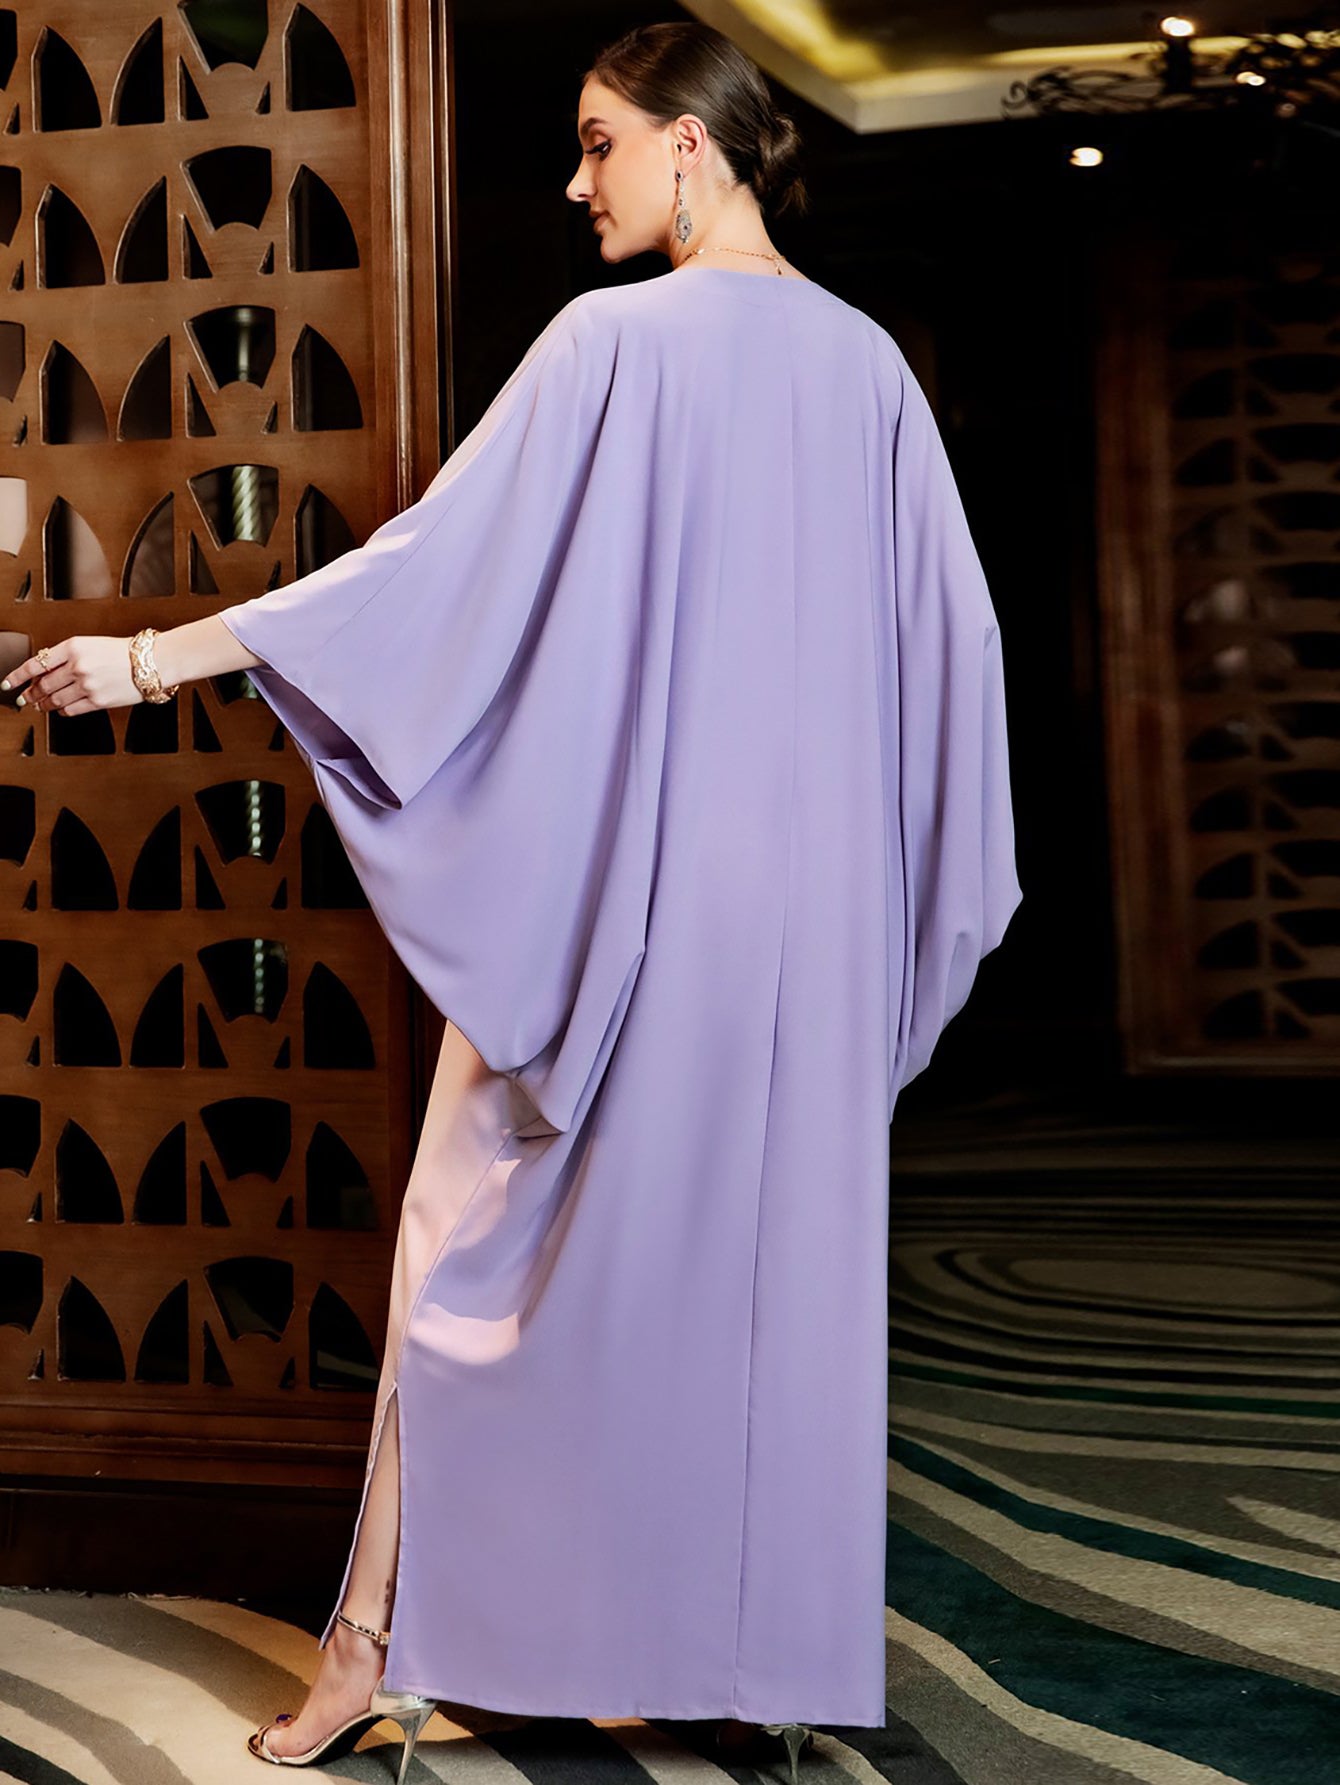 Robe Abaya brodée de paillettes